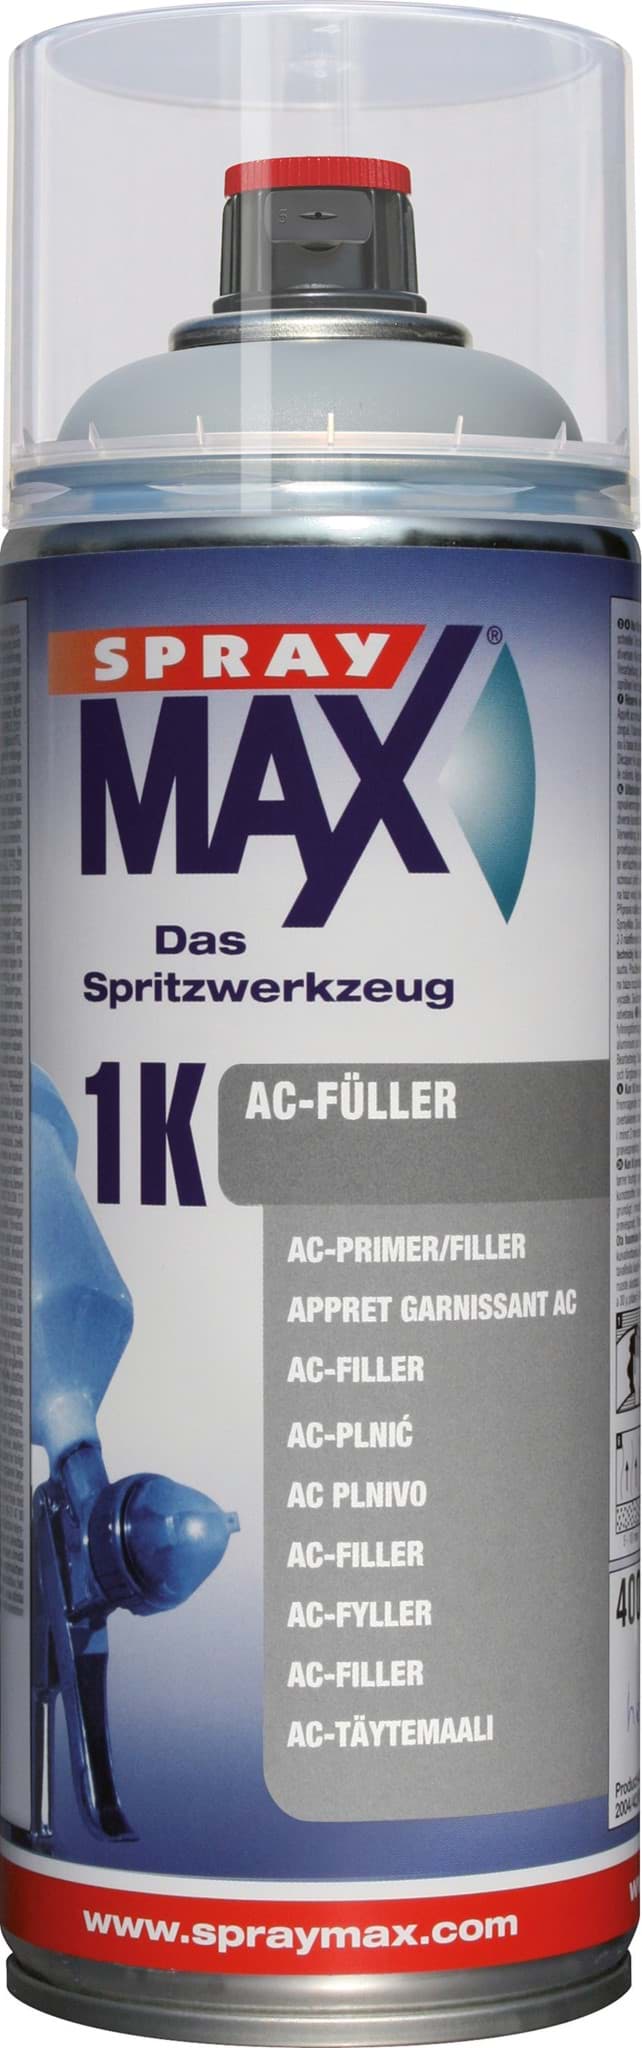 Изображение SprayMax 1K AC-Füller hellgrau Spray 400ml